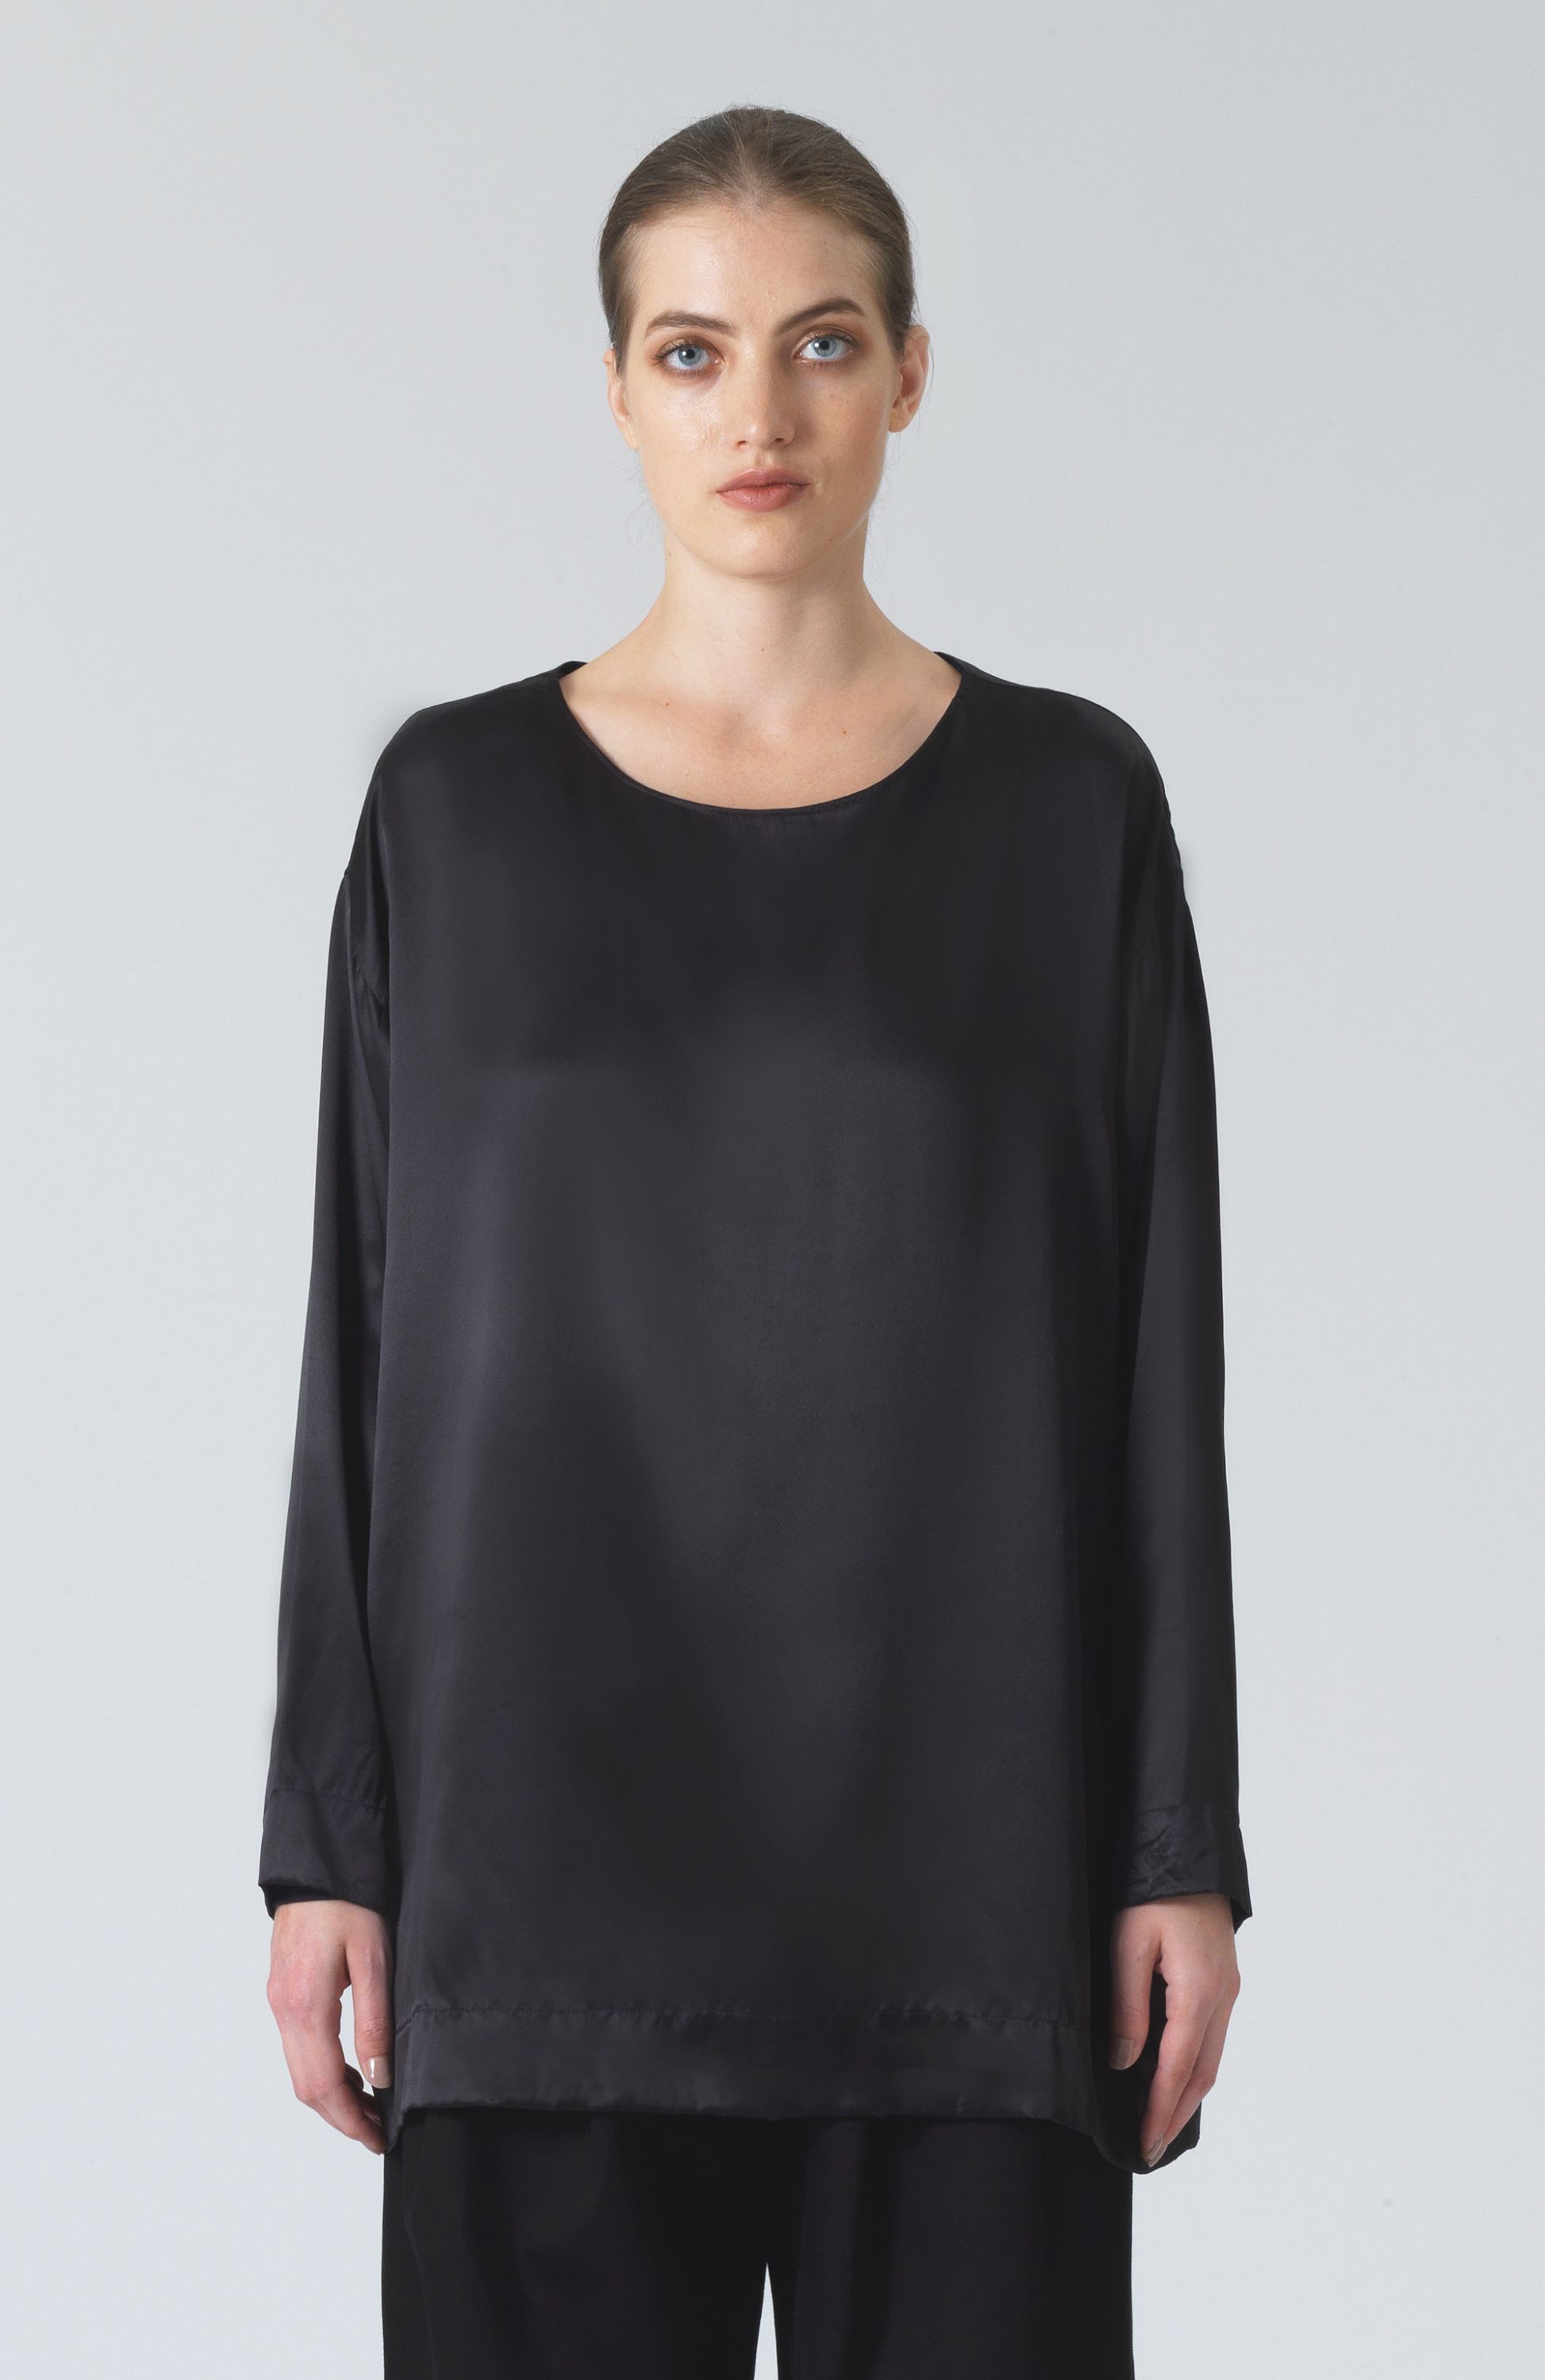 Katahrine Hamnett London - Meg Black Silk T-Shirt